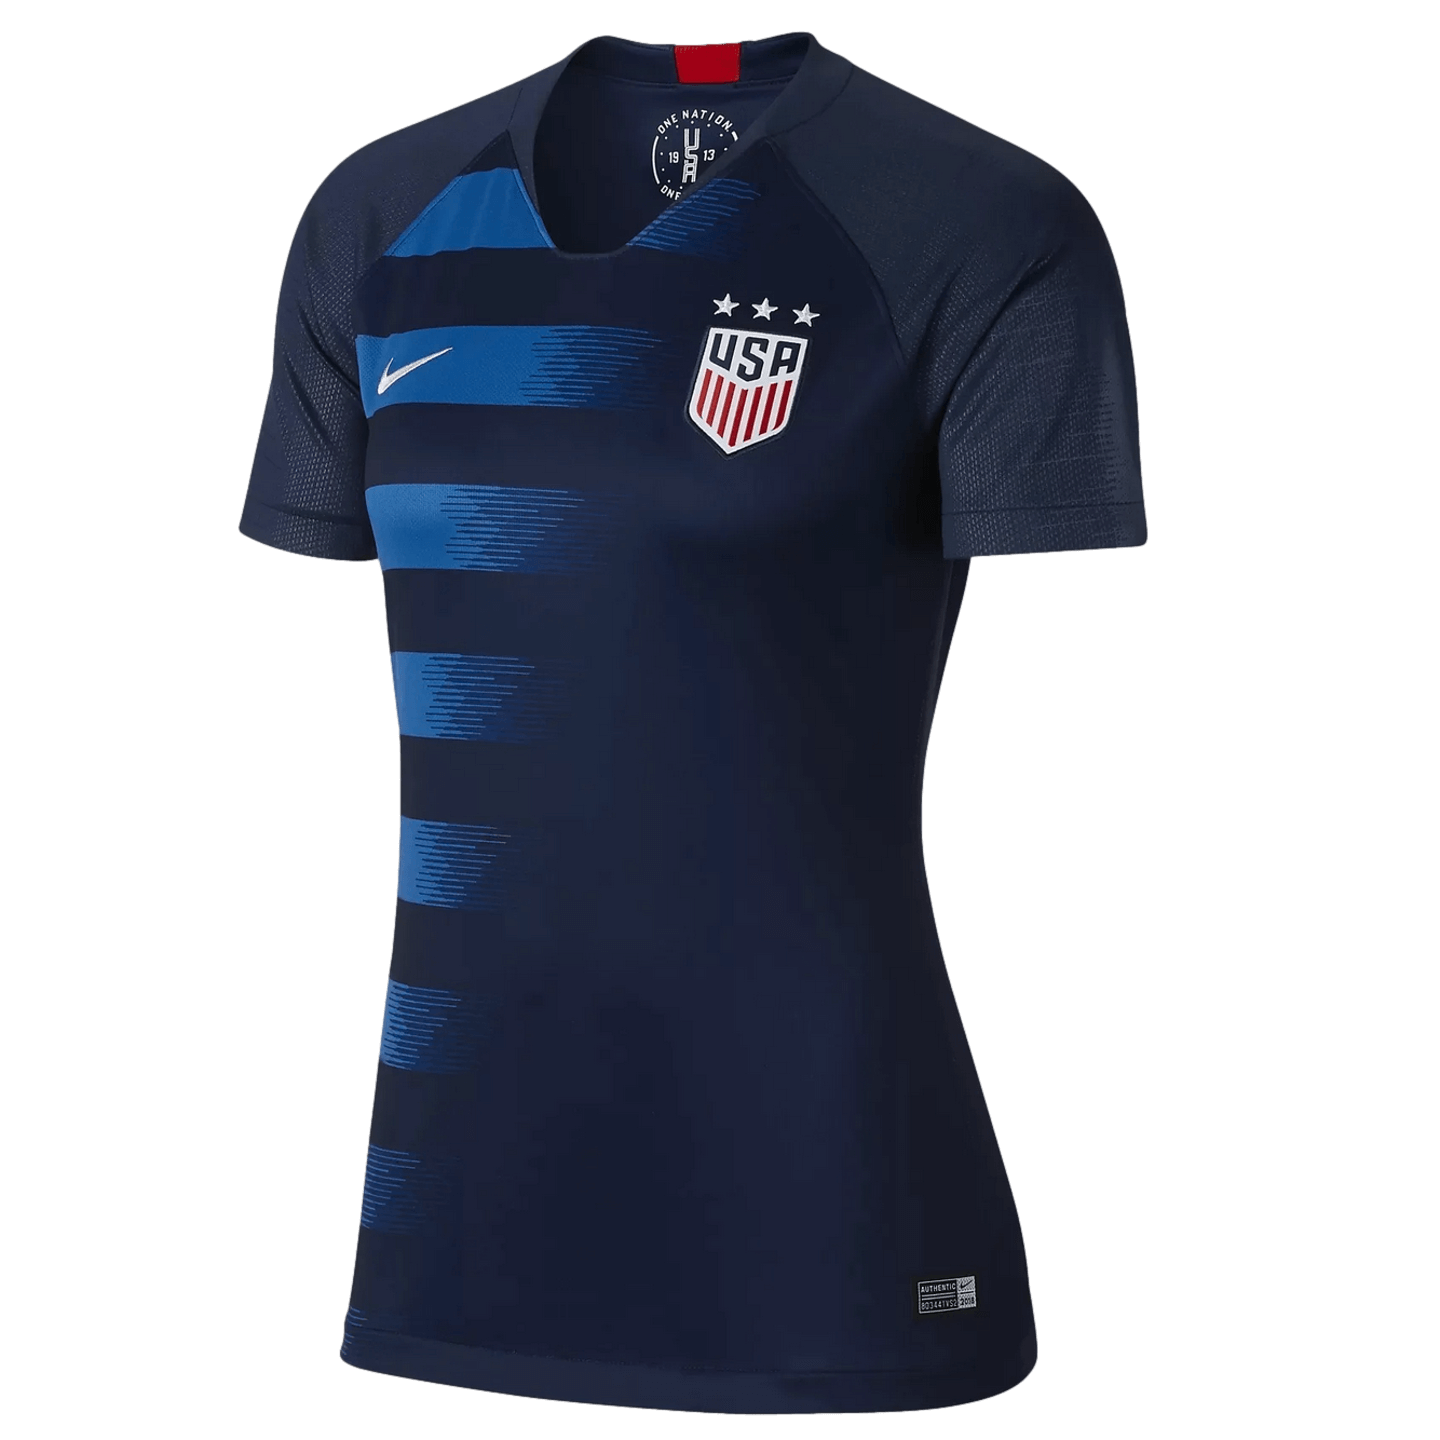 Camiseta Nike USA 2018 segunda equipación mujer